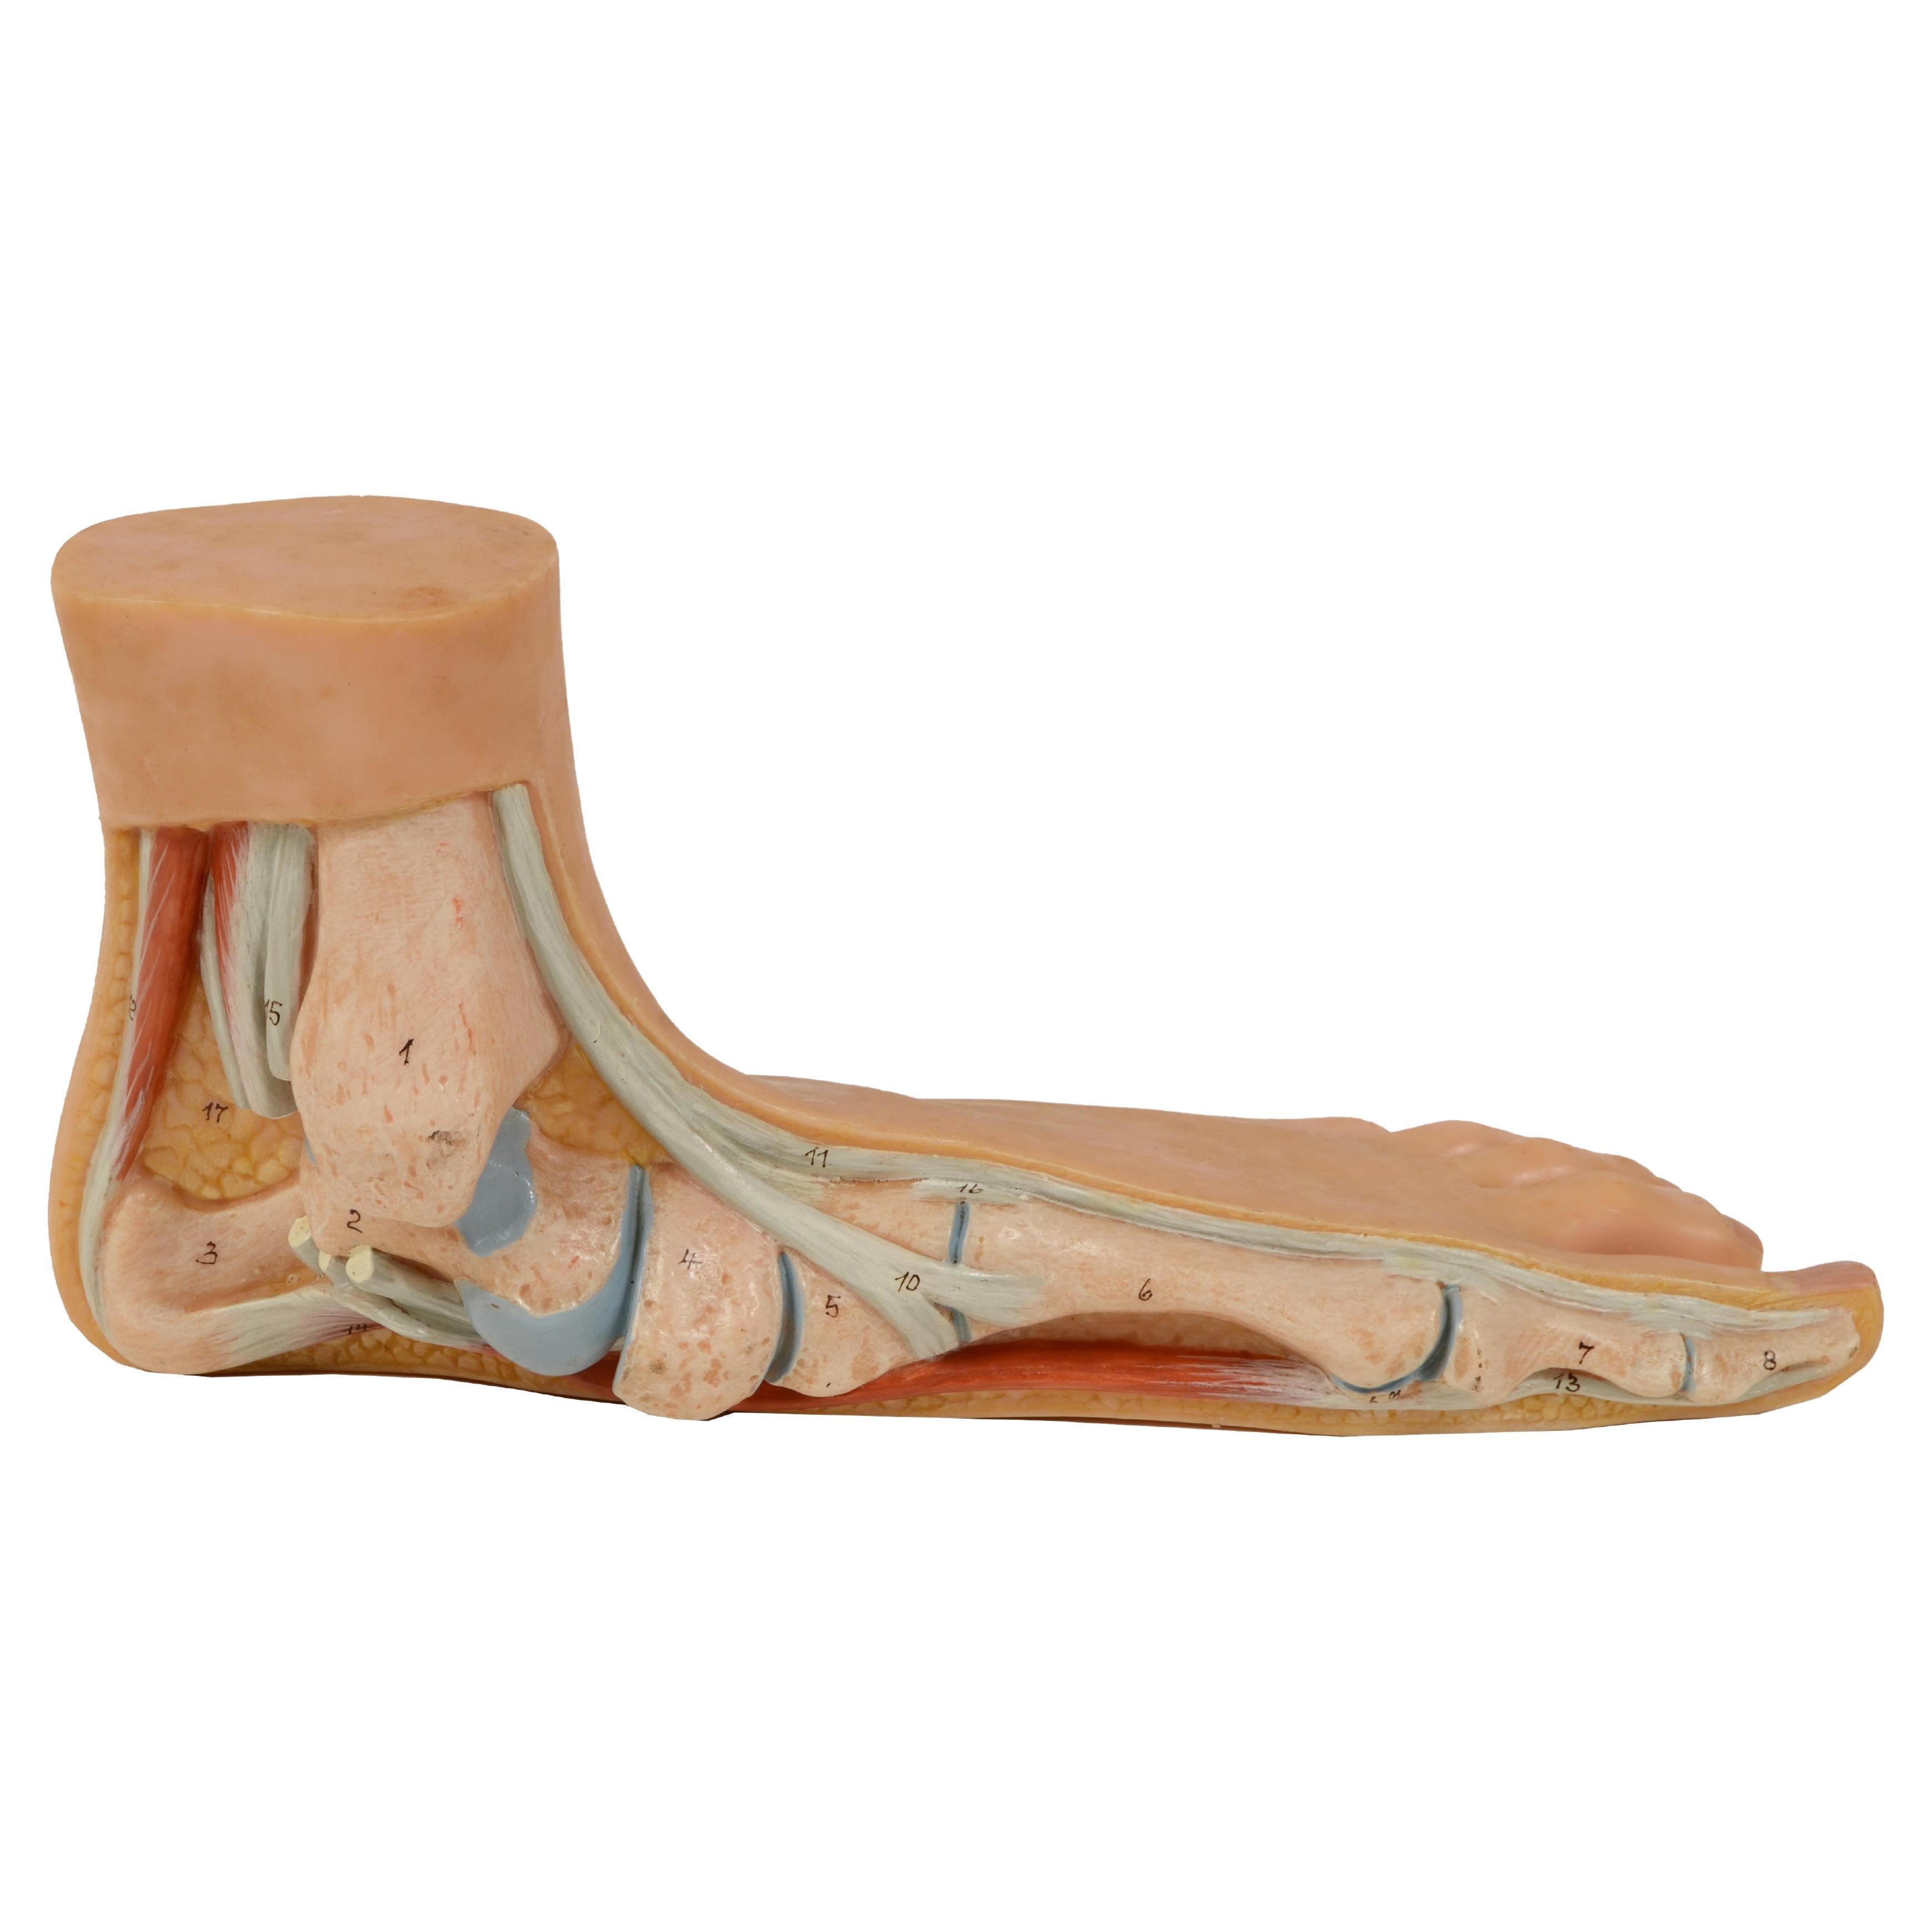 Anatomisches Lehrmodell in normaler Größe aus den 1950er Jahren mit flachem Fuß, „Pes Planus“